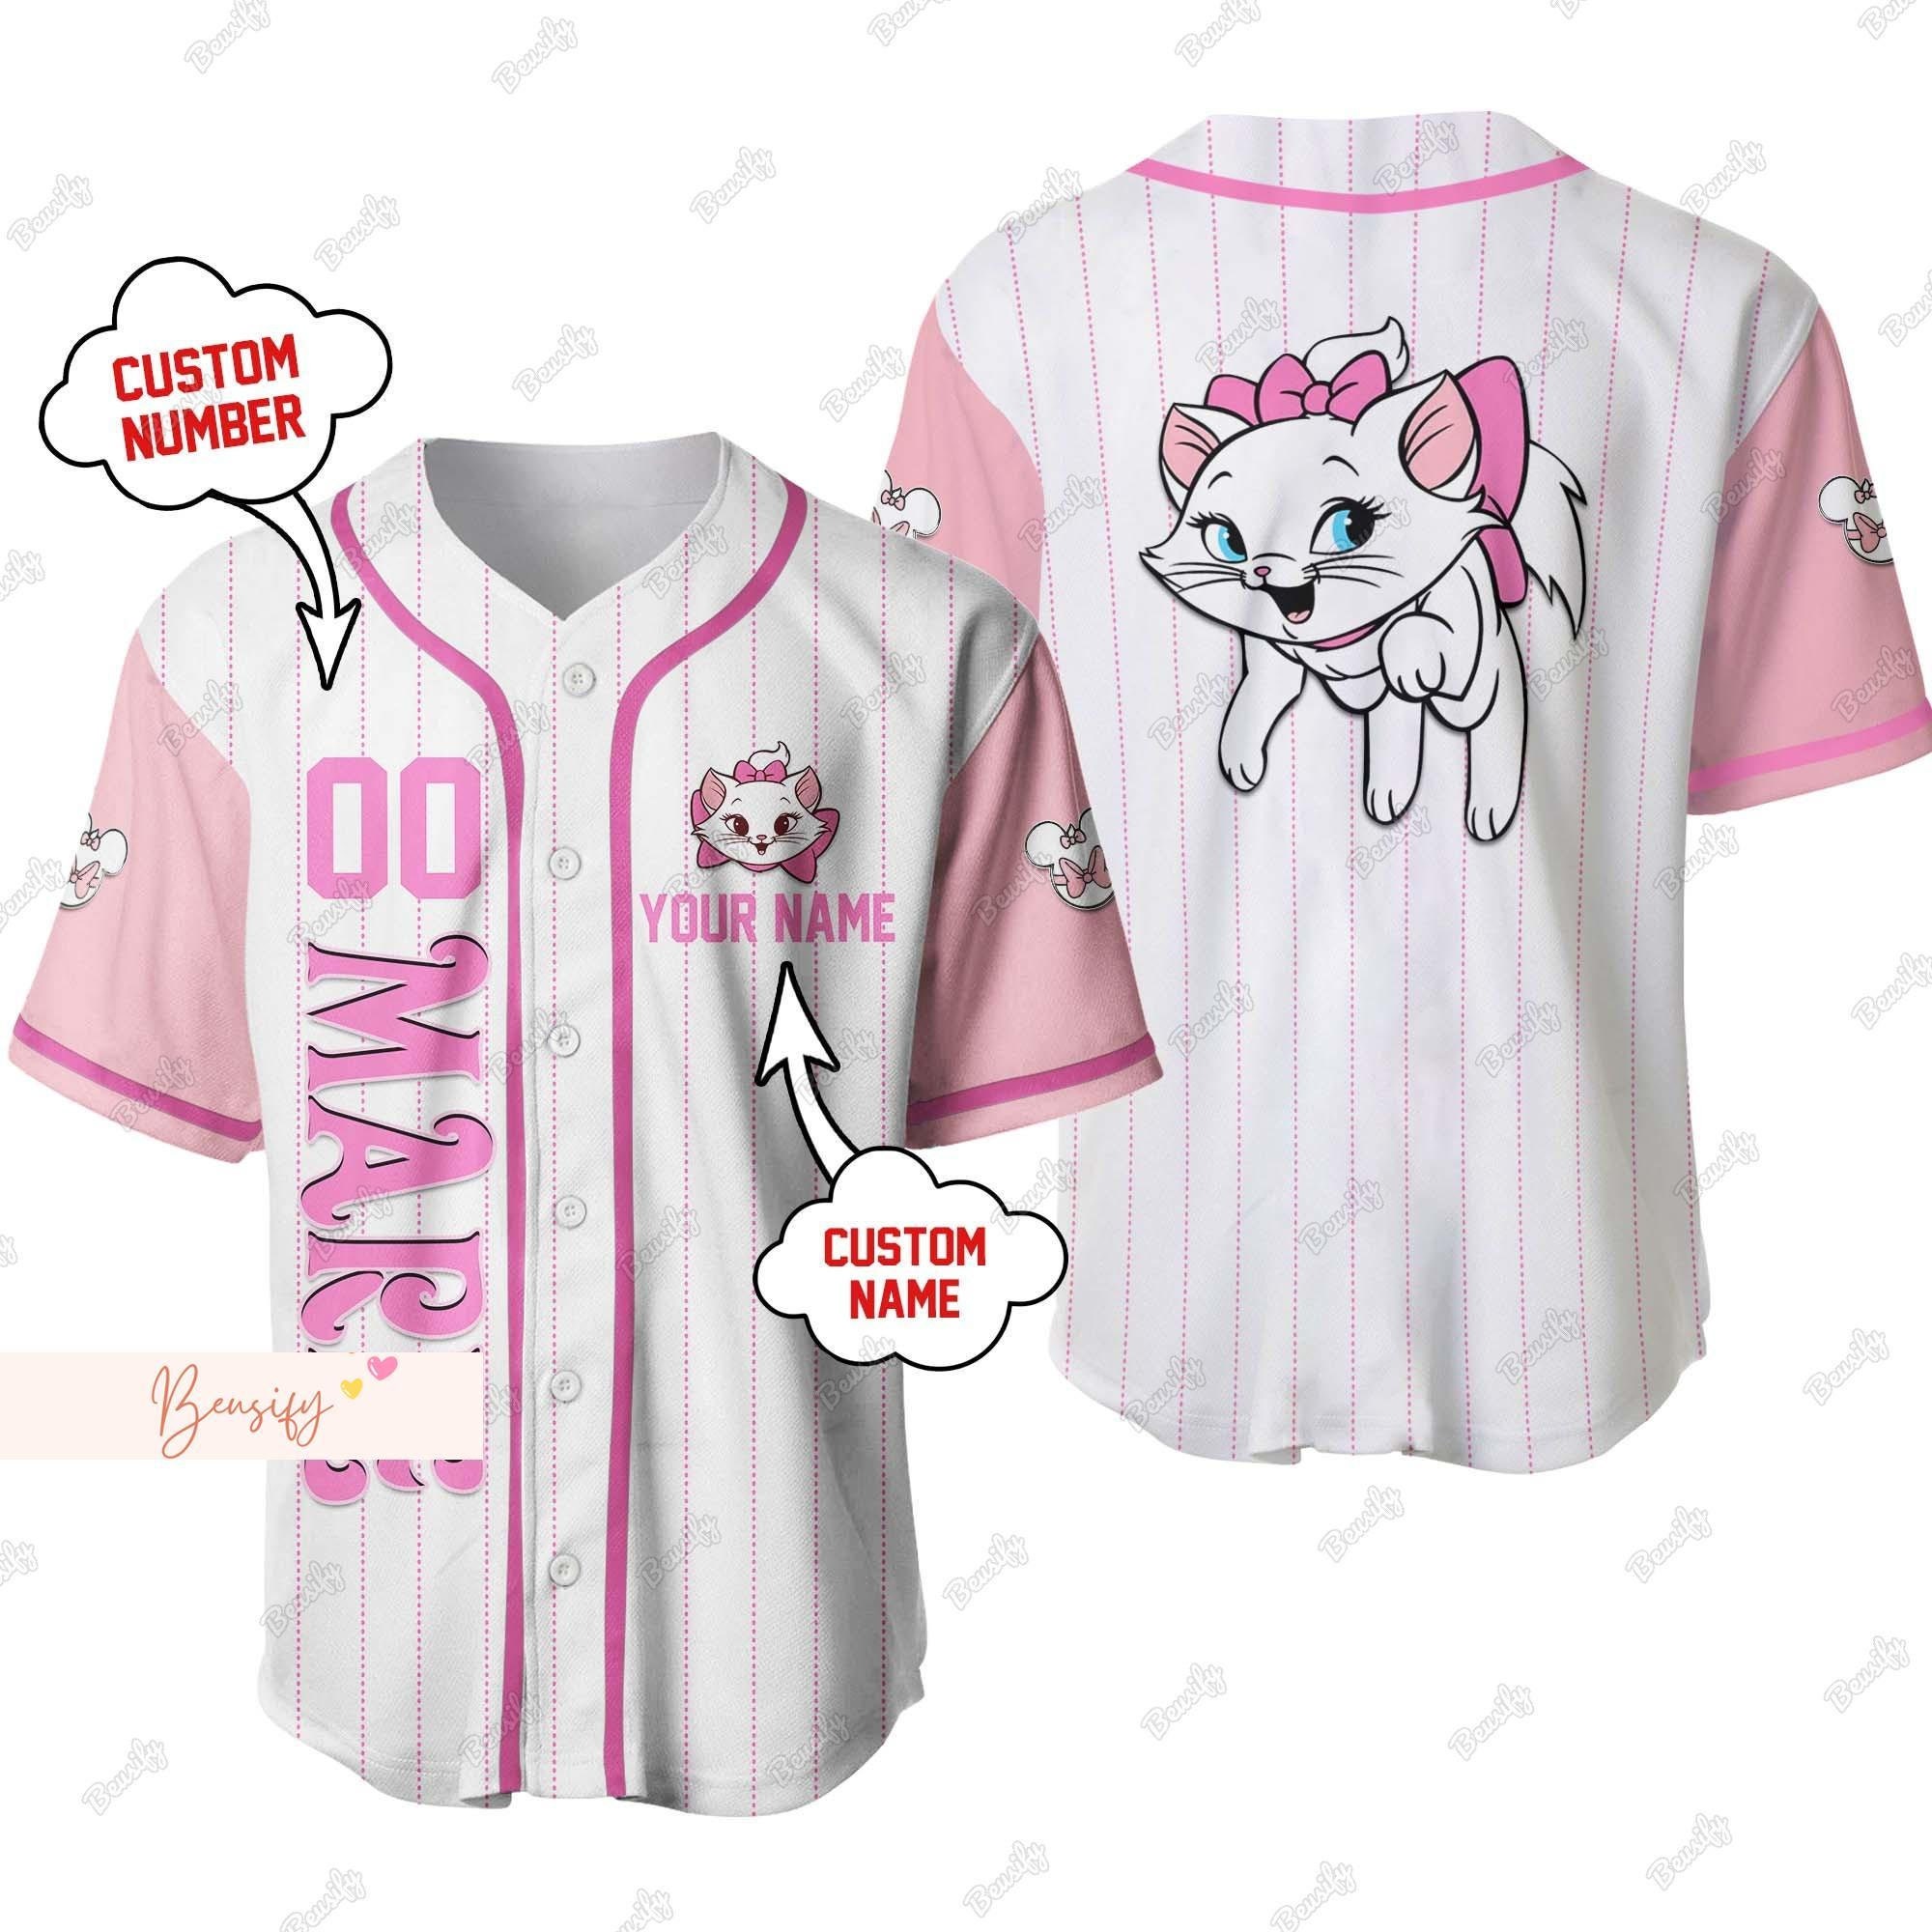 Marie Cat Jersey Shirt, Marie Cat Baseball Jersey, Cute Marie Jersey